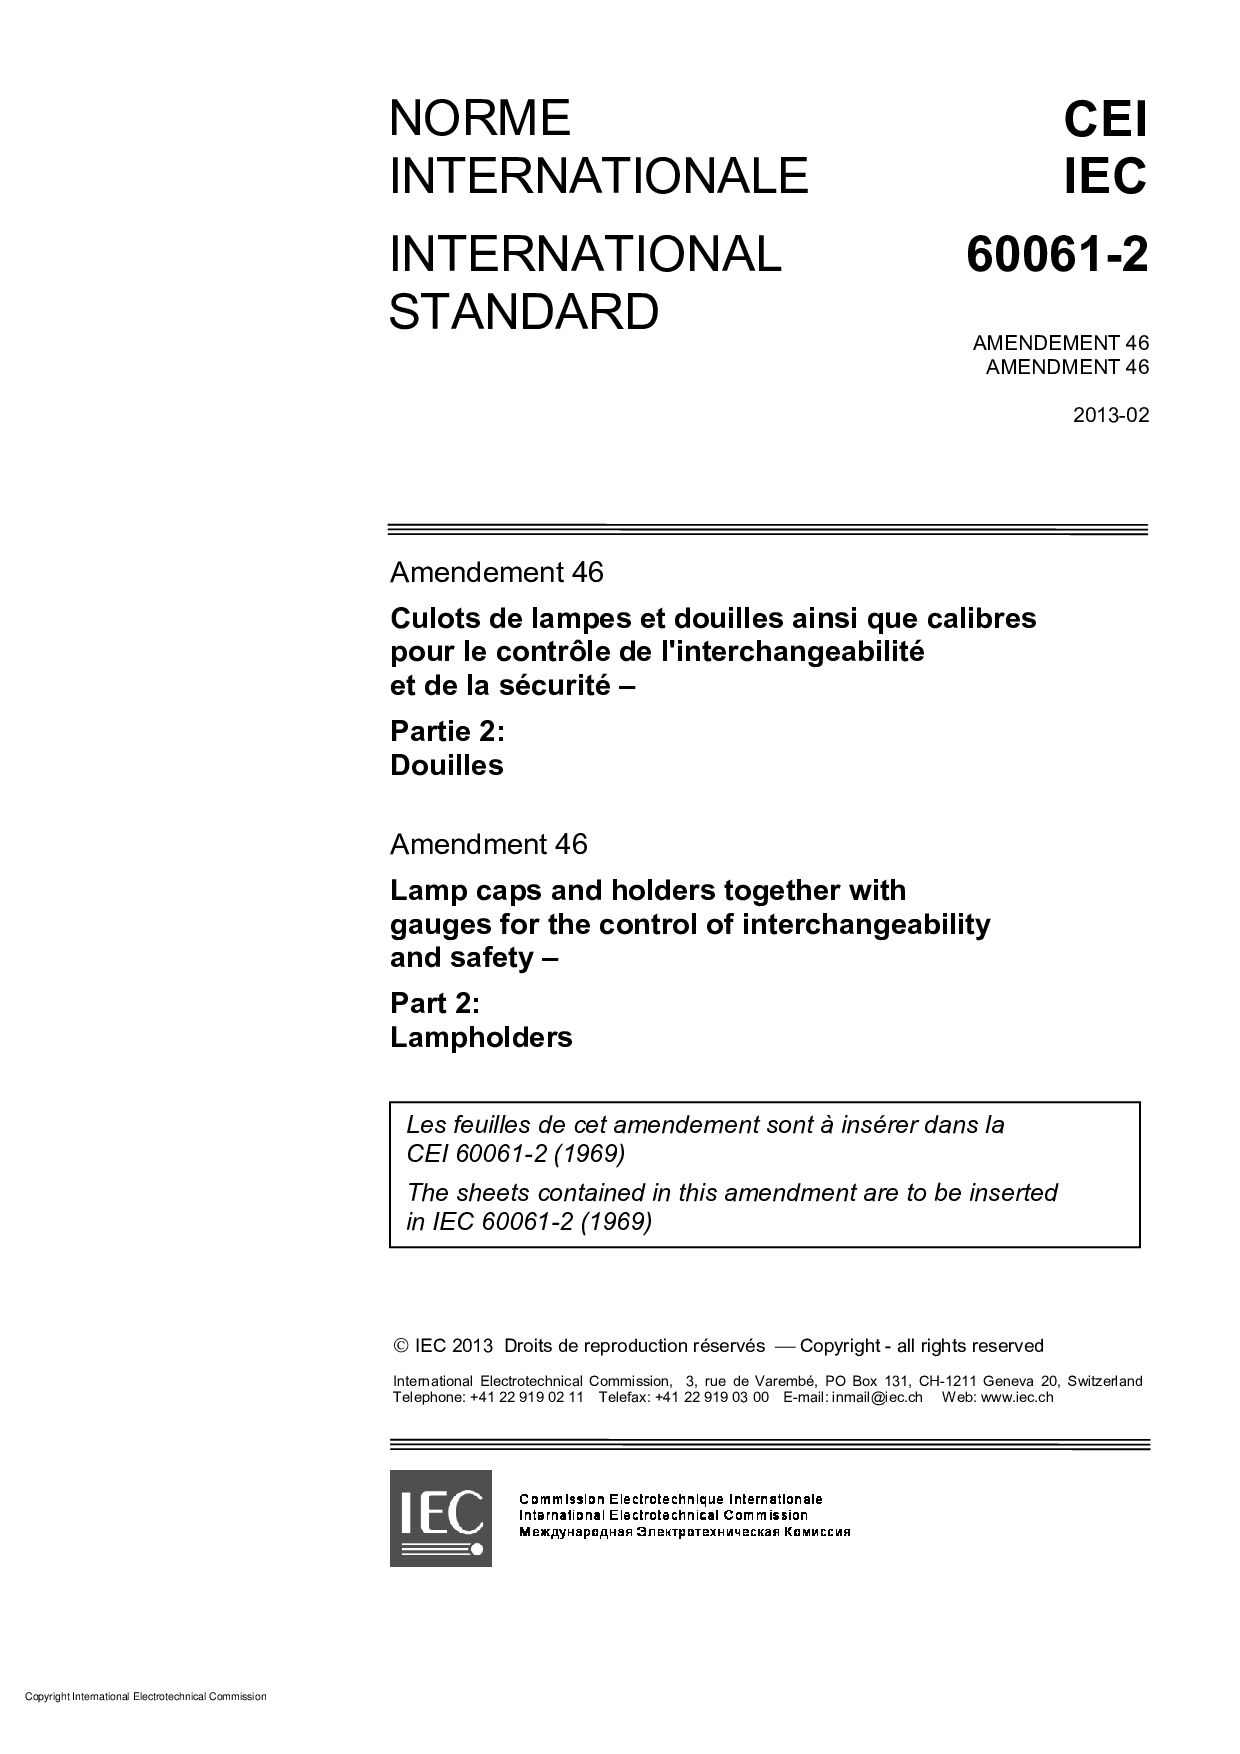 IEC 60061-2:1969/AMD46:2013